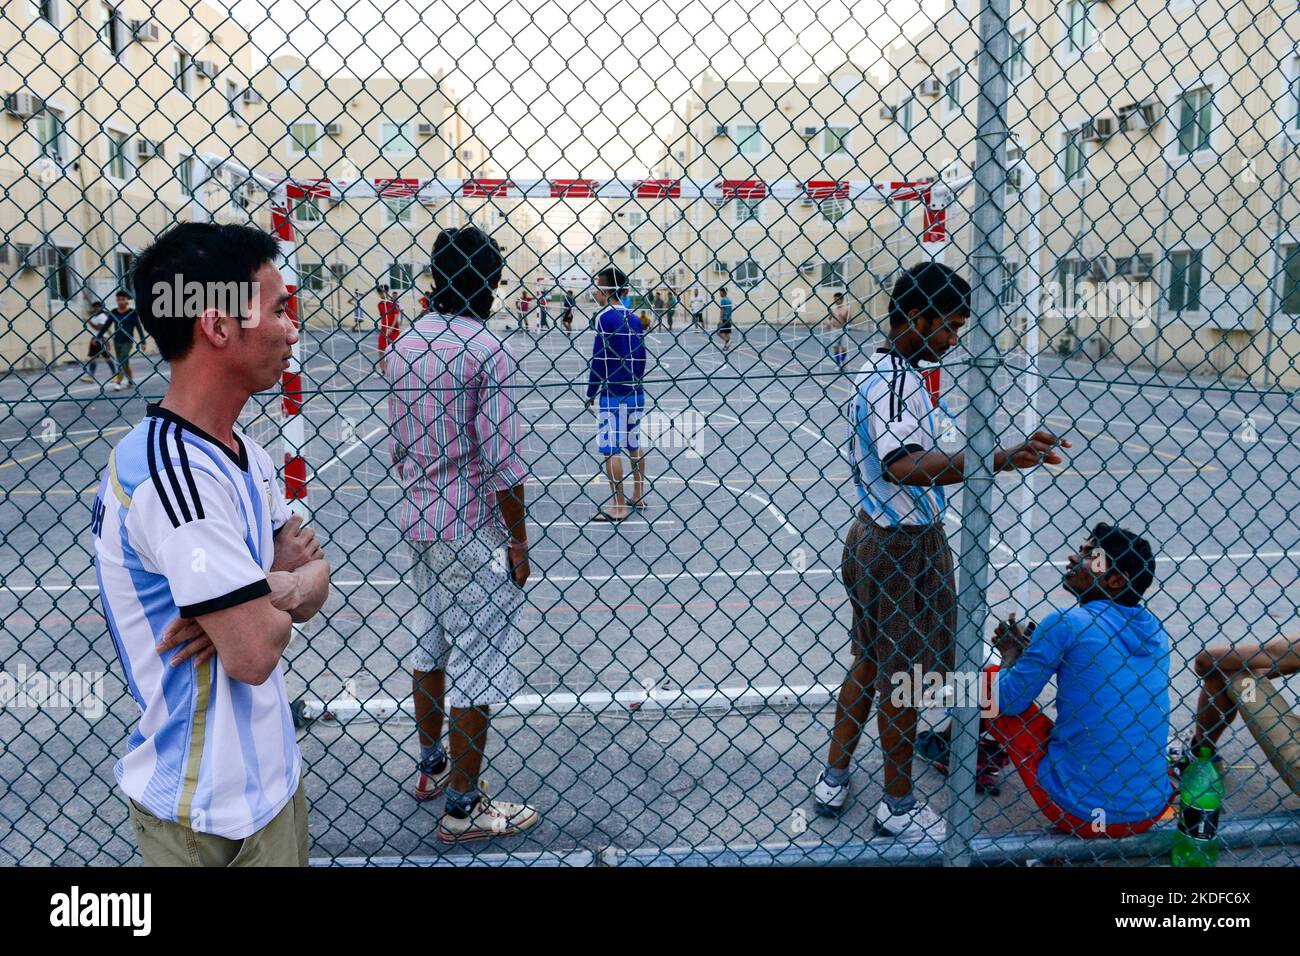 KATAR, Doha, Industriekomplex, Wohnkomplex für Wanderarbeiter außerhalb der Stadt, Sports Place / KATAR, Doha, Sammelunterkunft für Gastarbeiter außerhalb der Stadt, Sportplatz, Gastarbeiter aus den Philippinen und Vietnam spielen Fußball Stockfoto